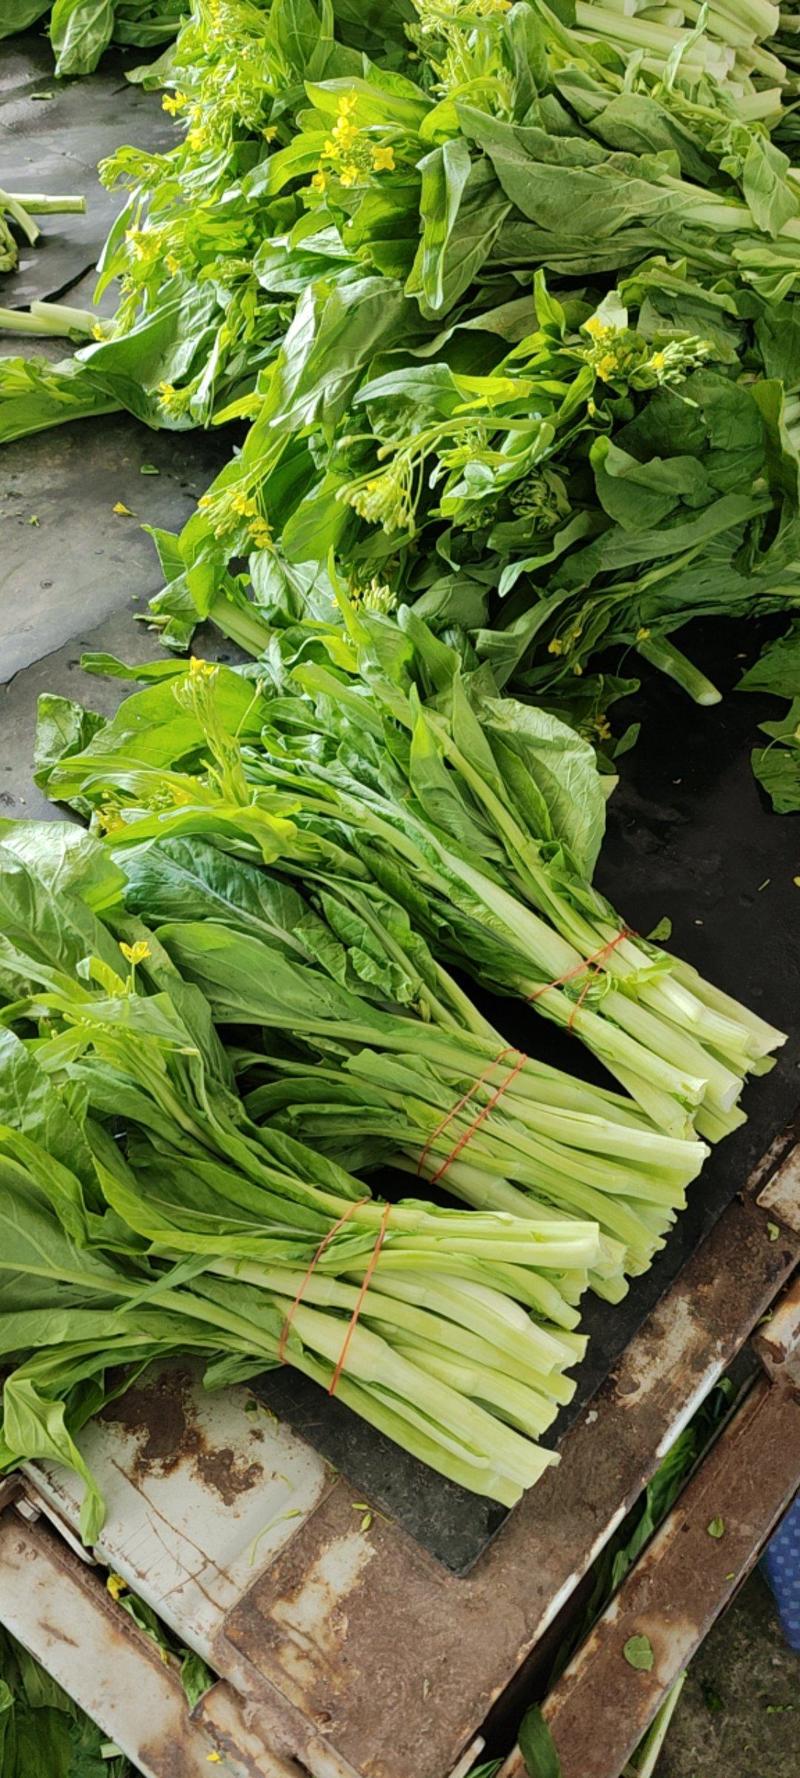 白菜苔，红菜苔，广东菜心，品种多，做工专业